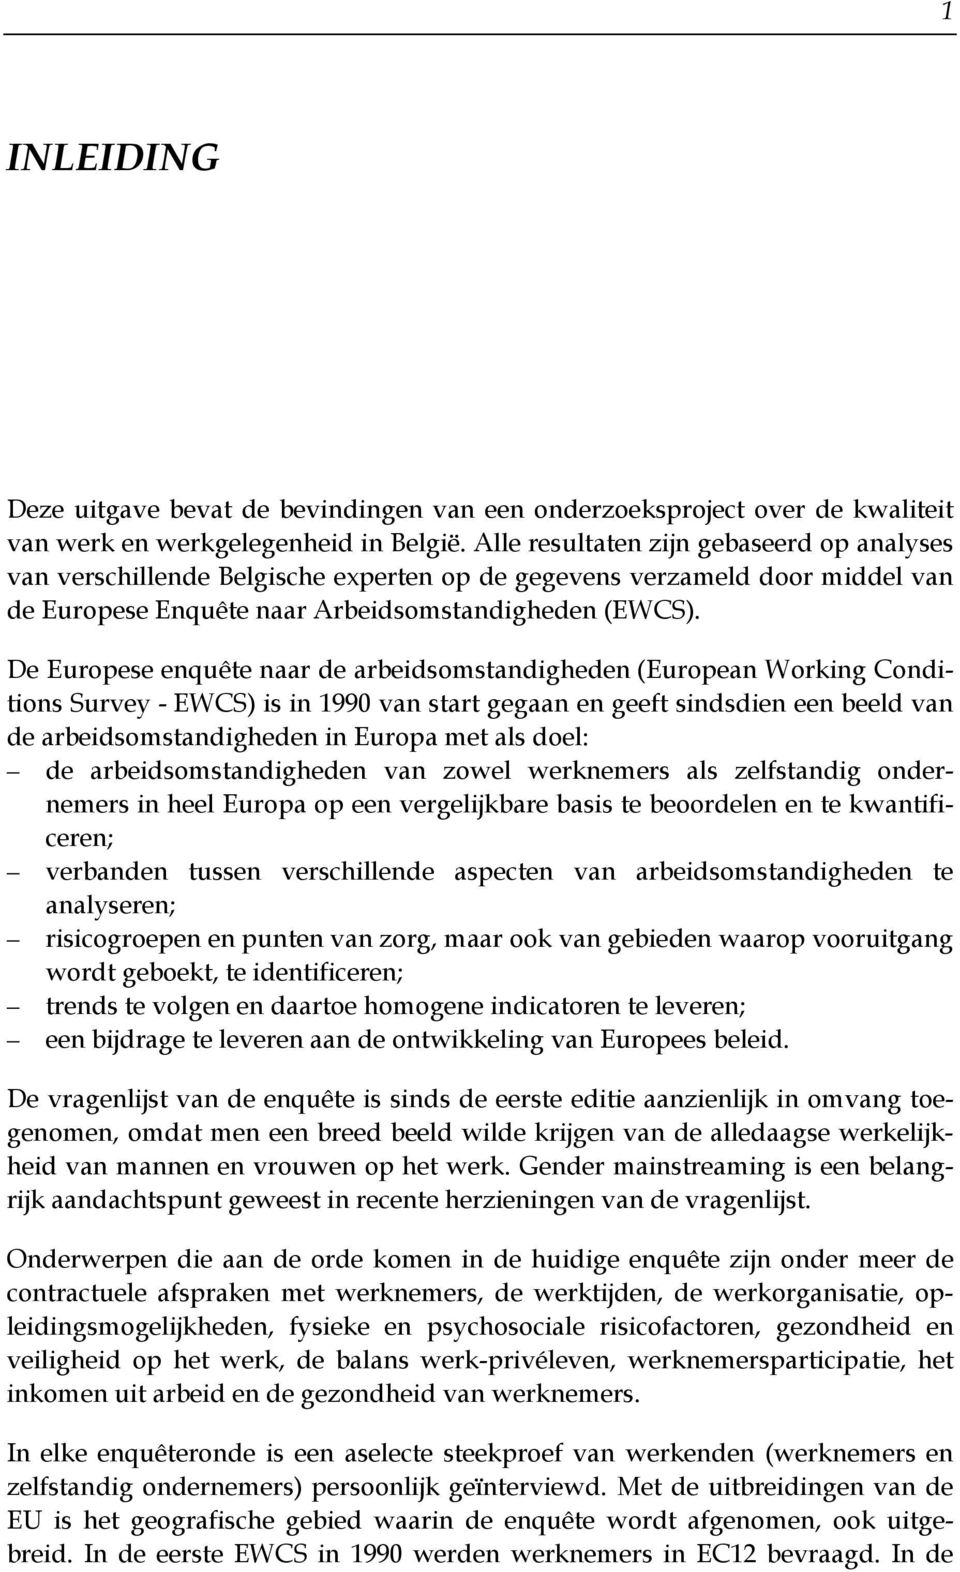 De Europese enquête naar de arbeidsomstandigheden (European Working Conditions Survey - EWCS) is in 1990 van start gegaan en geeft sindsdien een beeld van de arbeidsomstandigheden in Europa met als